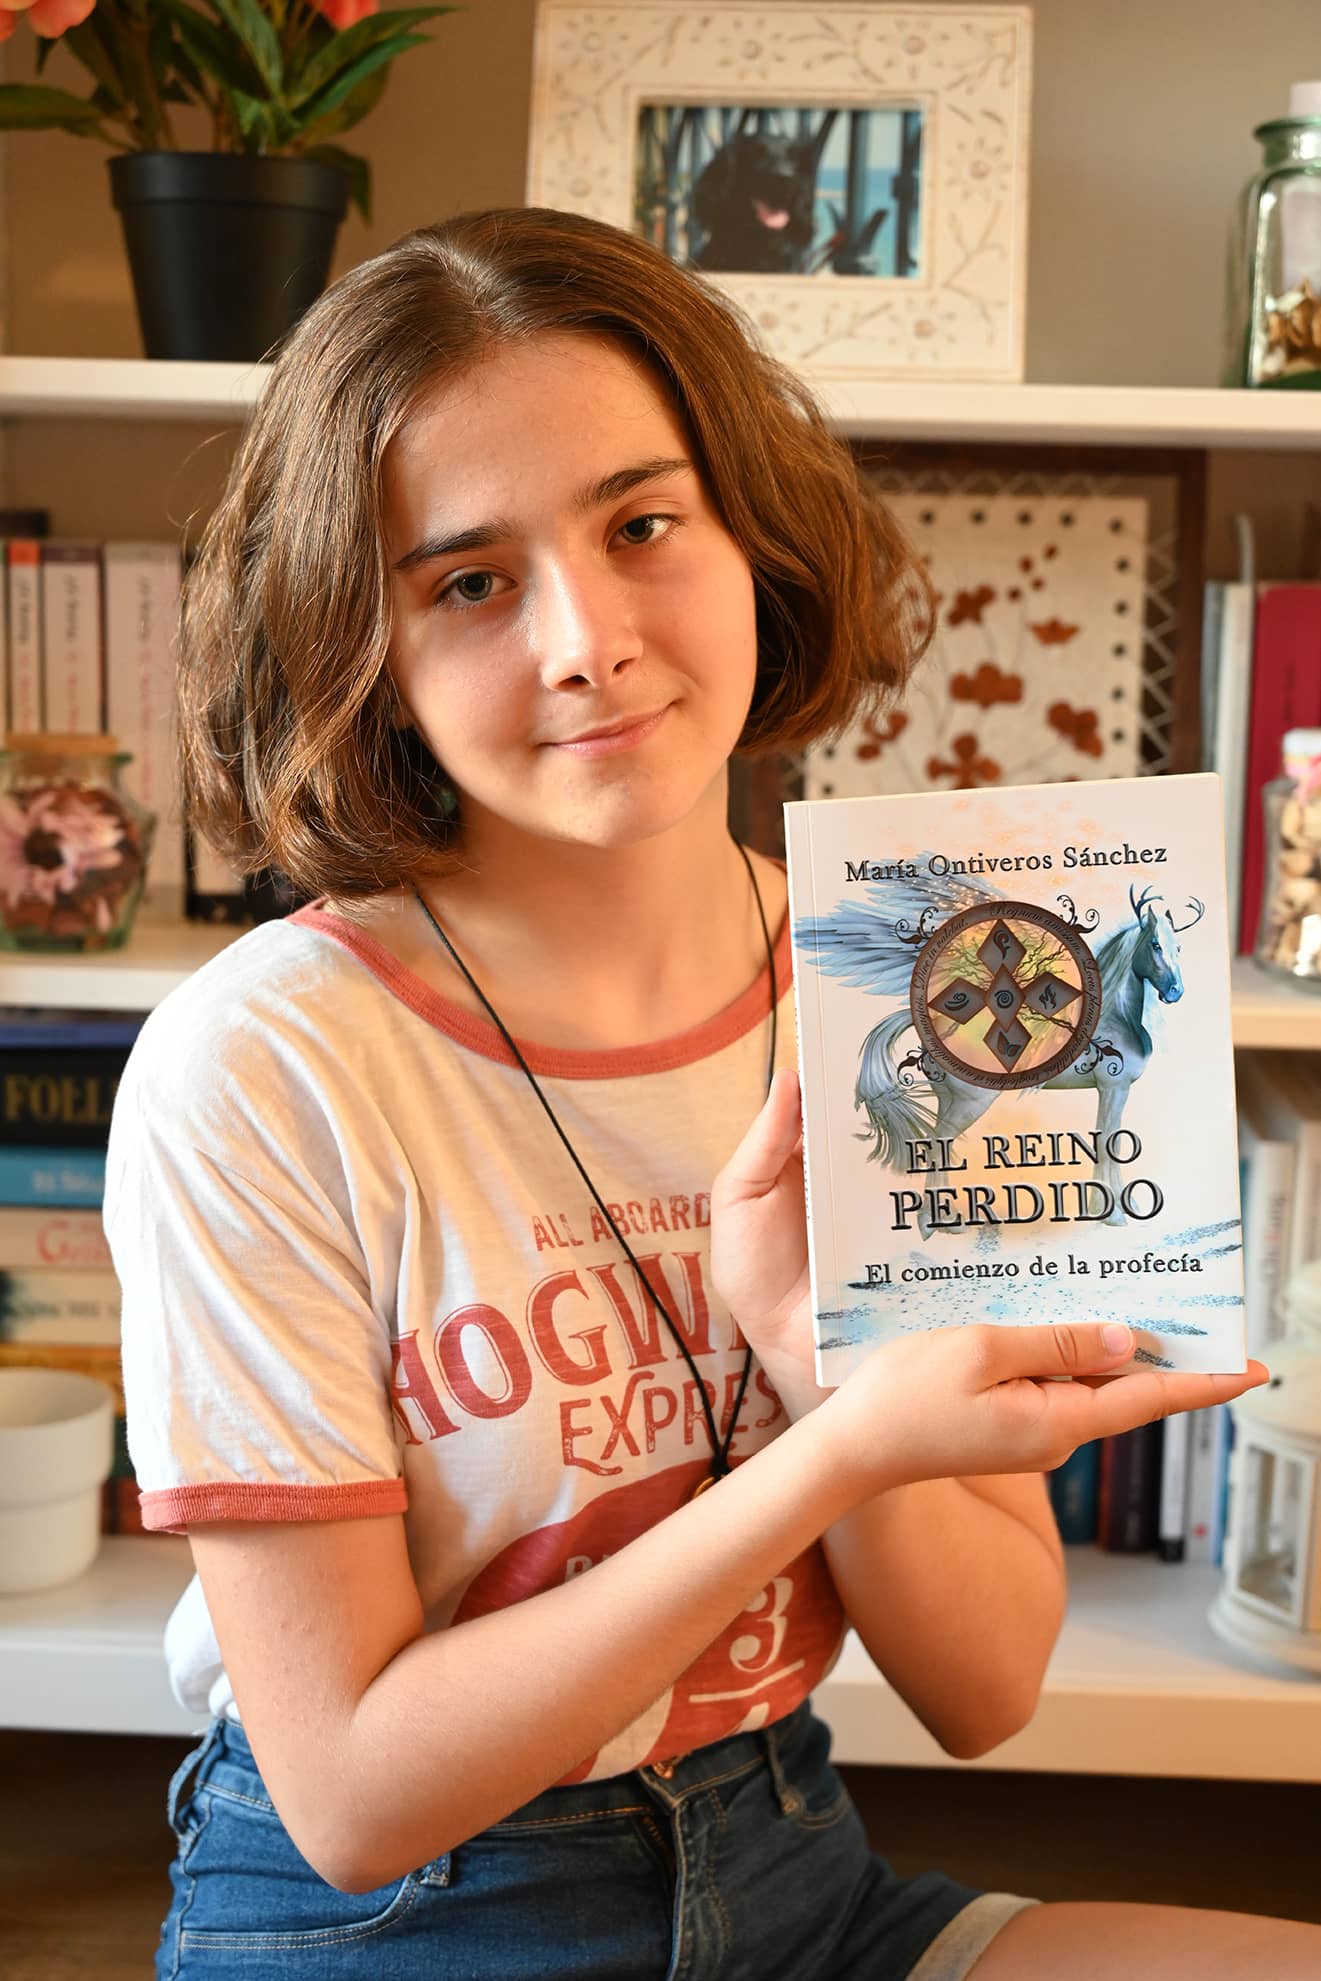 Charlamos con la jovencísima escritora María Ontiveros Sánchez, la cual, con sólo 13 años, publica su primera obra: “El reino perdido: El comienzo de la profecía”